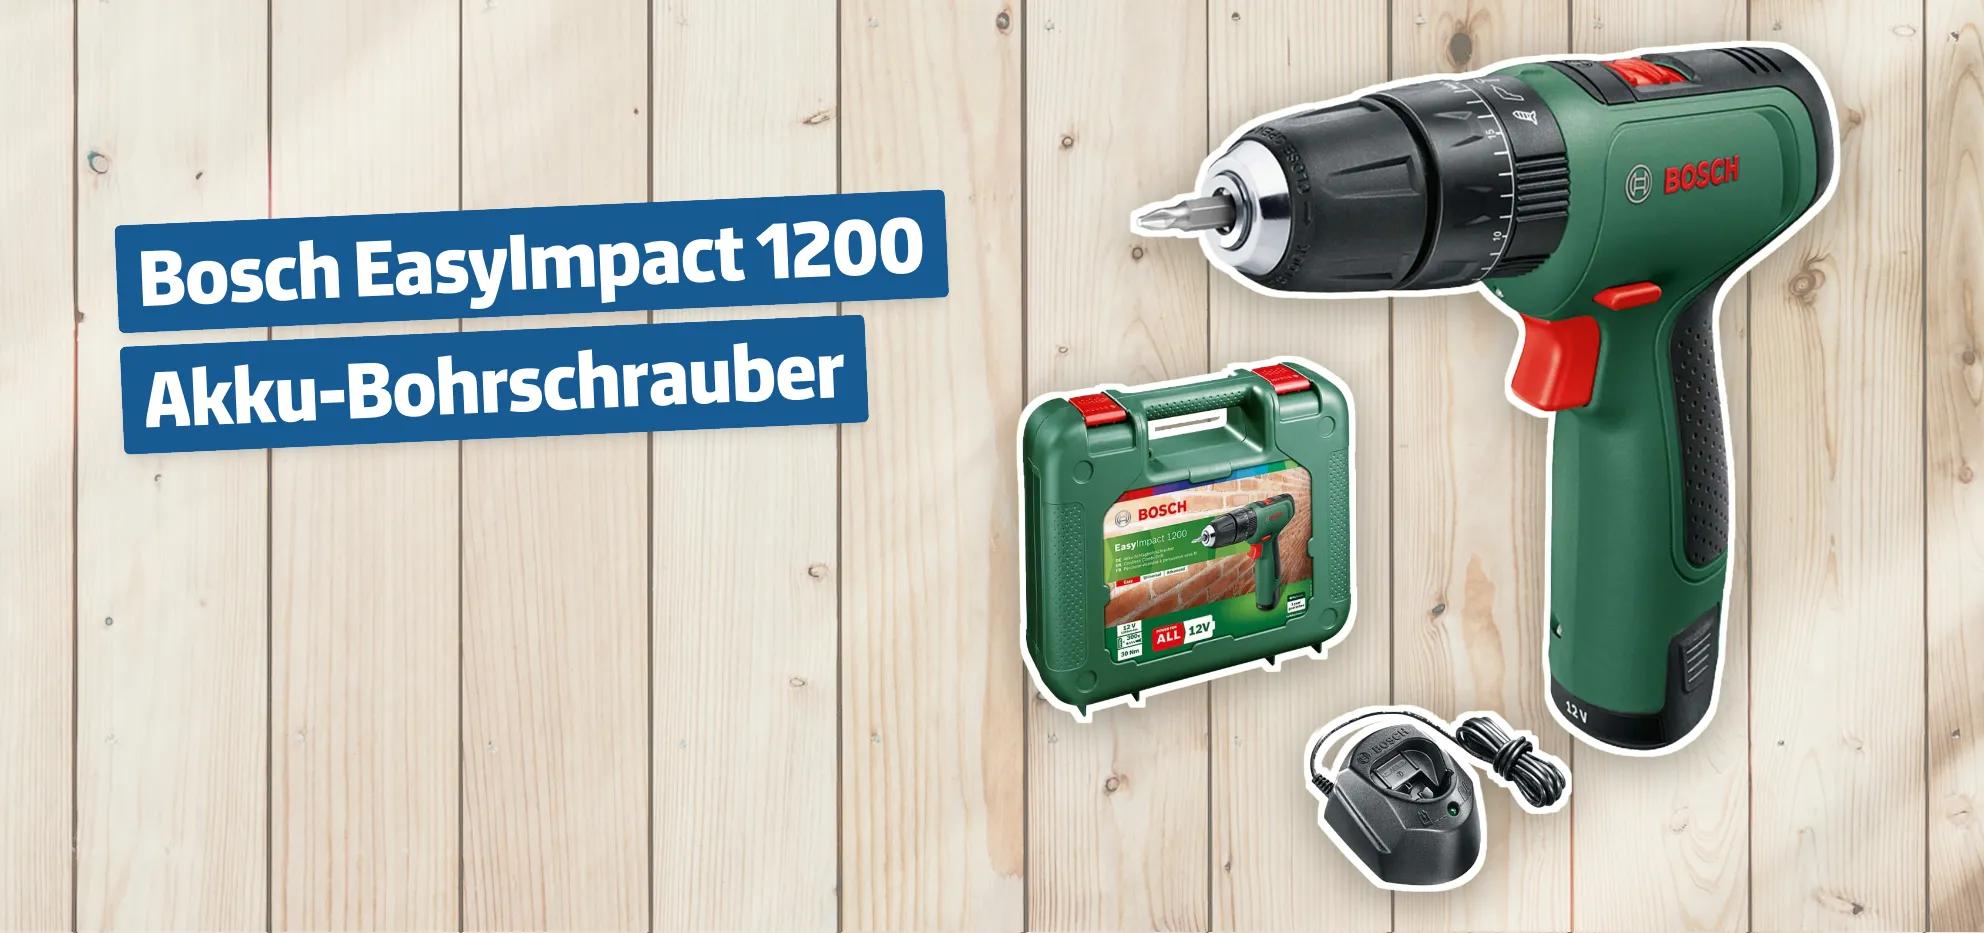 Bosch EasyImpact 1200 Akku-Bohrschrauber